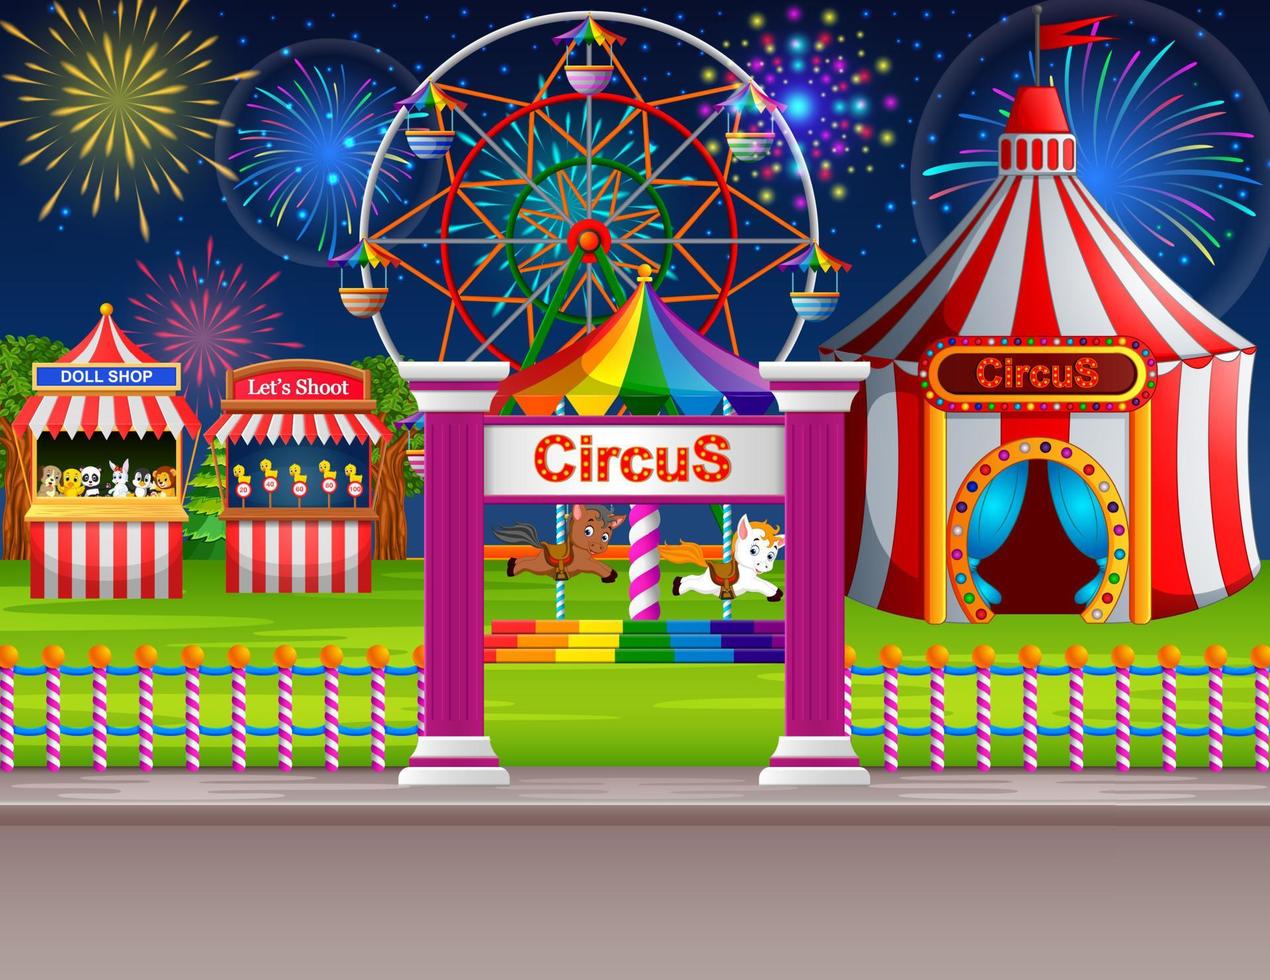 cena do parque de diversões com tenda de circo e fogos de artifício vetor